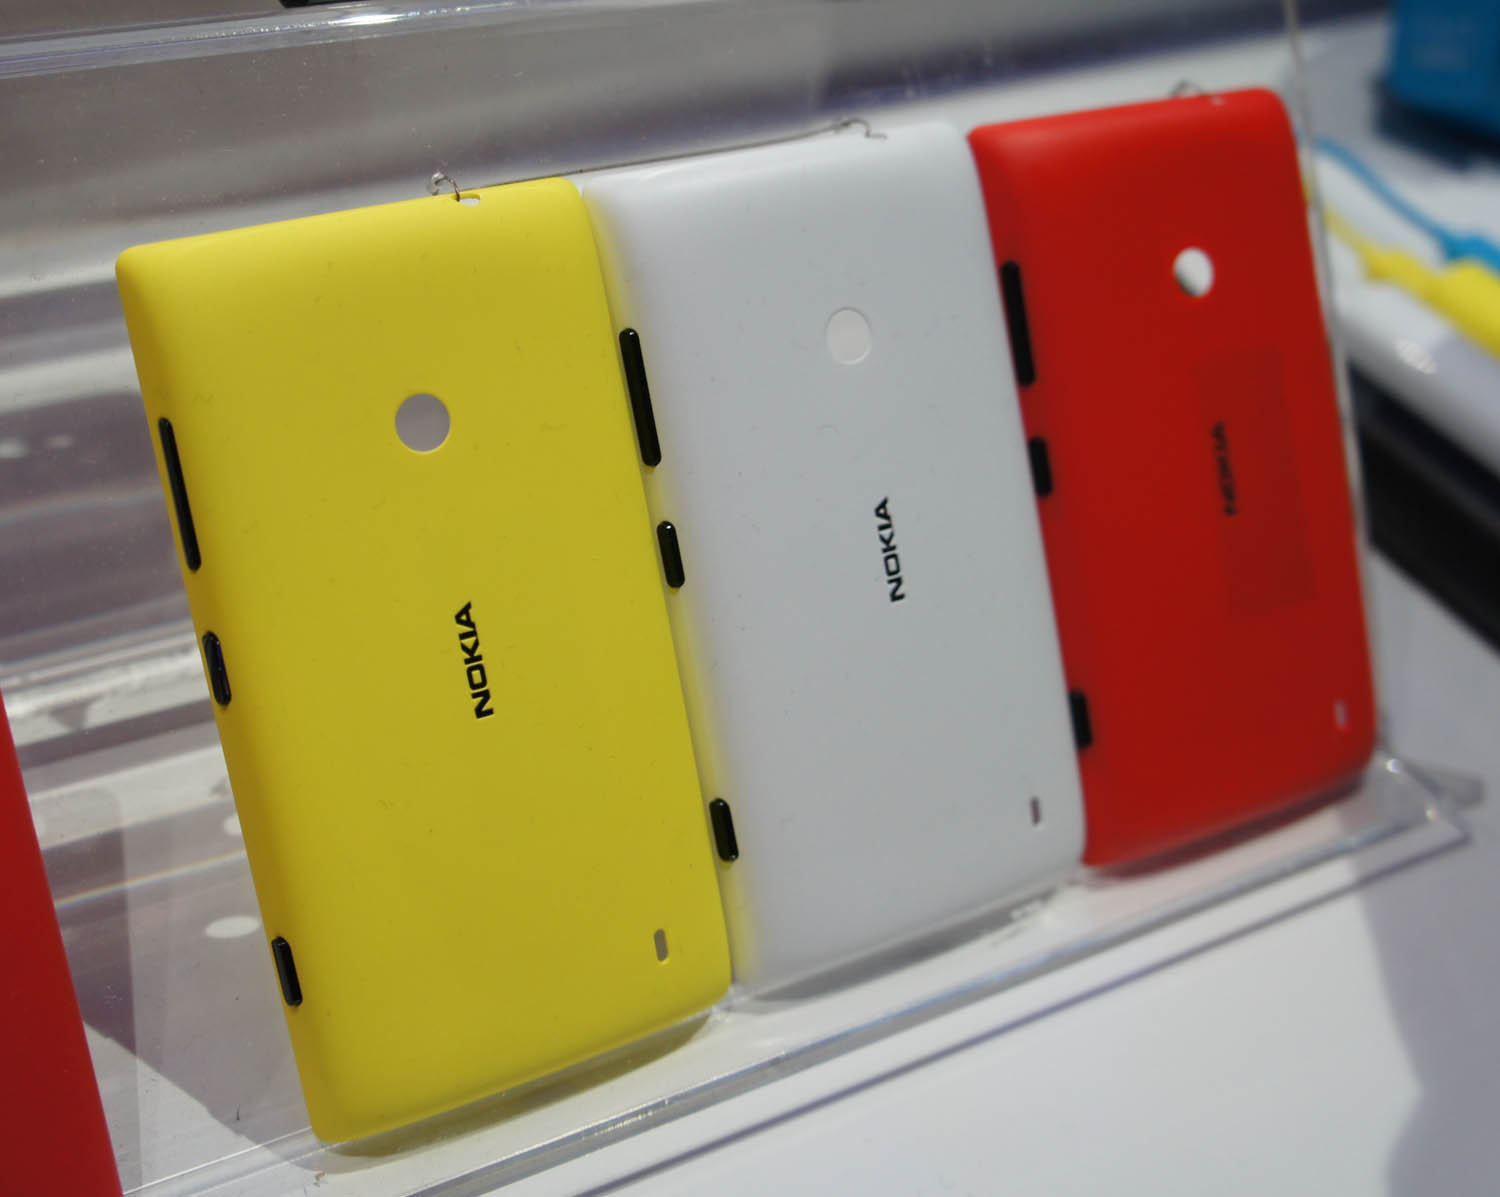 صور و مواصفات جوال لوميا Nokia Lumia 520